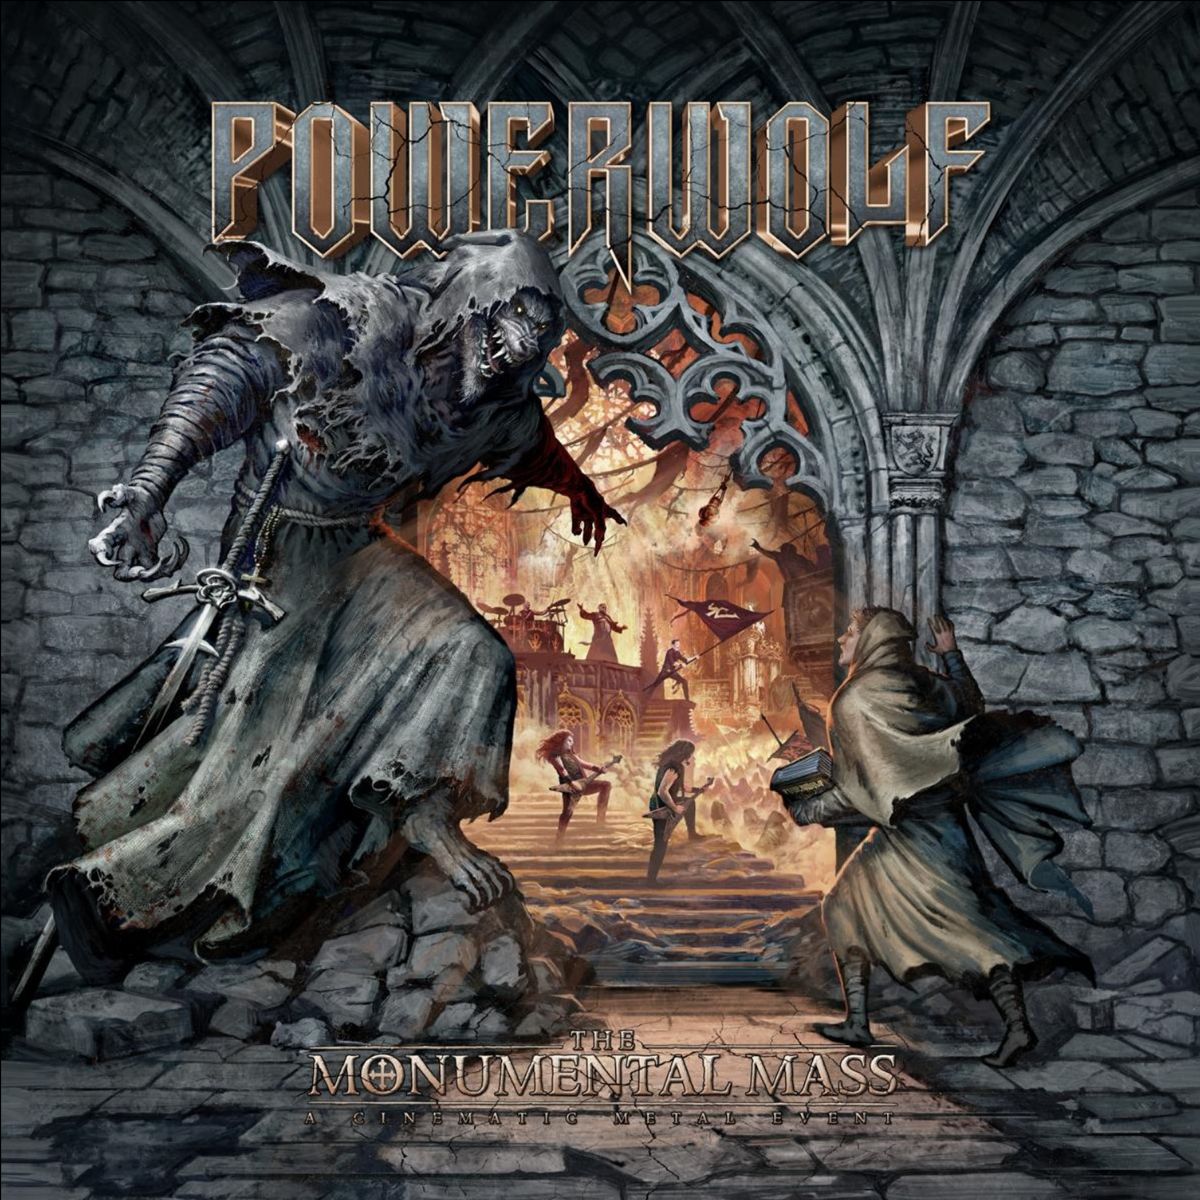 Powerwolf GMM Festival (Bootleg)- Spirit of Metal Webzine (en)